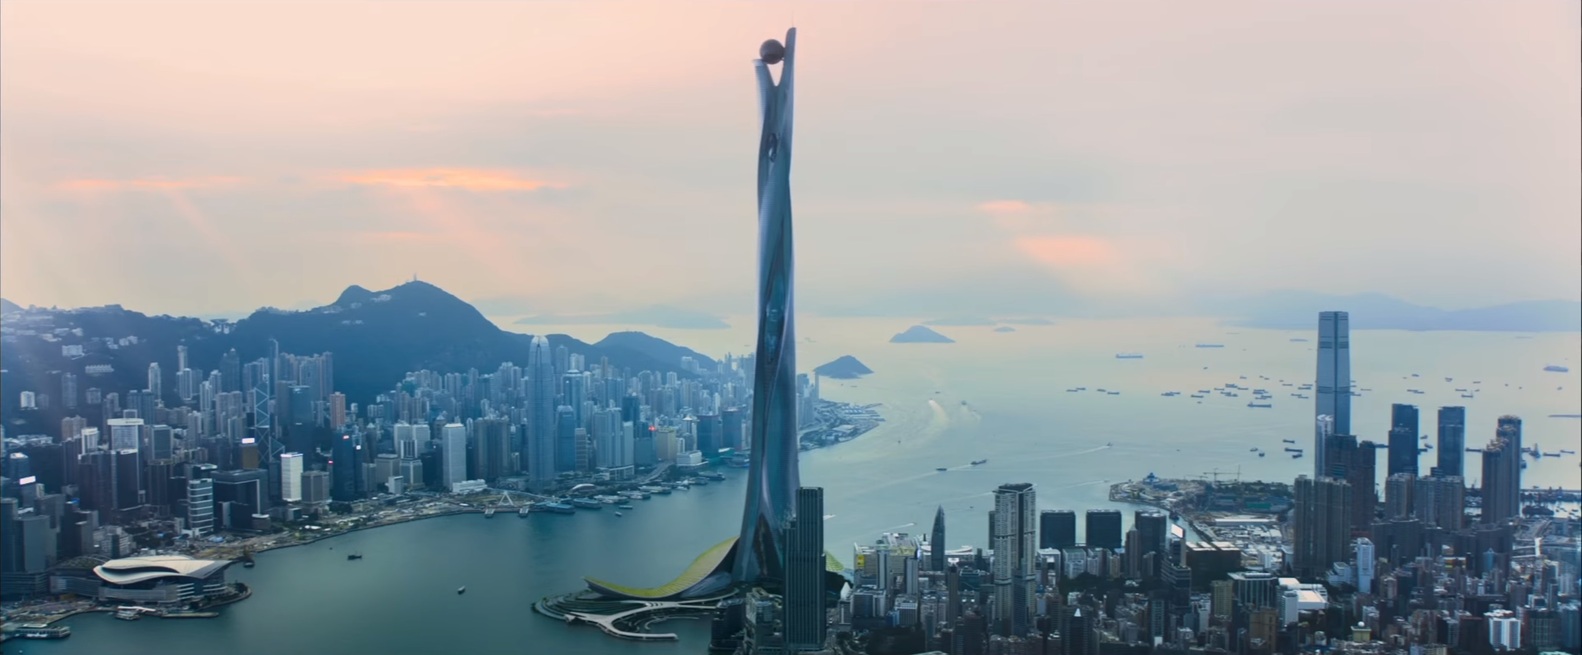 Pokoli torony: drámai események láncolatát indítja el, ami a világ  legmagasabb felhőkarcolójával történik - Blikk